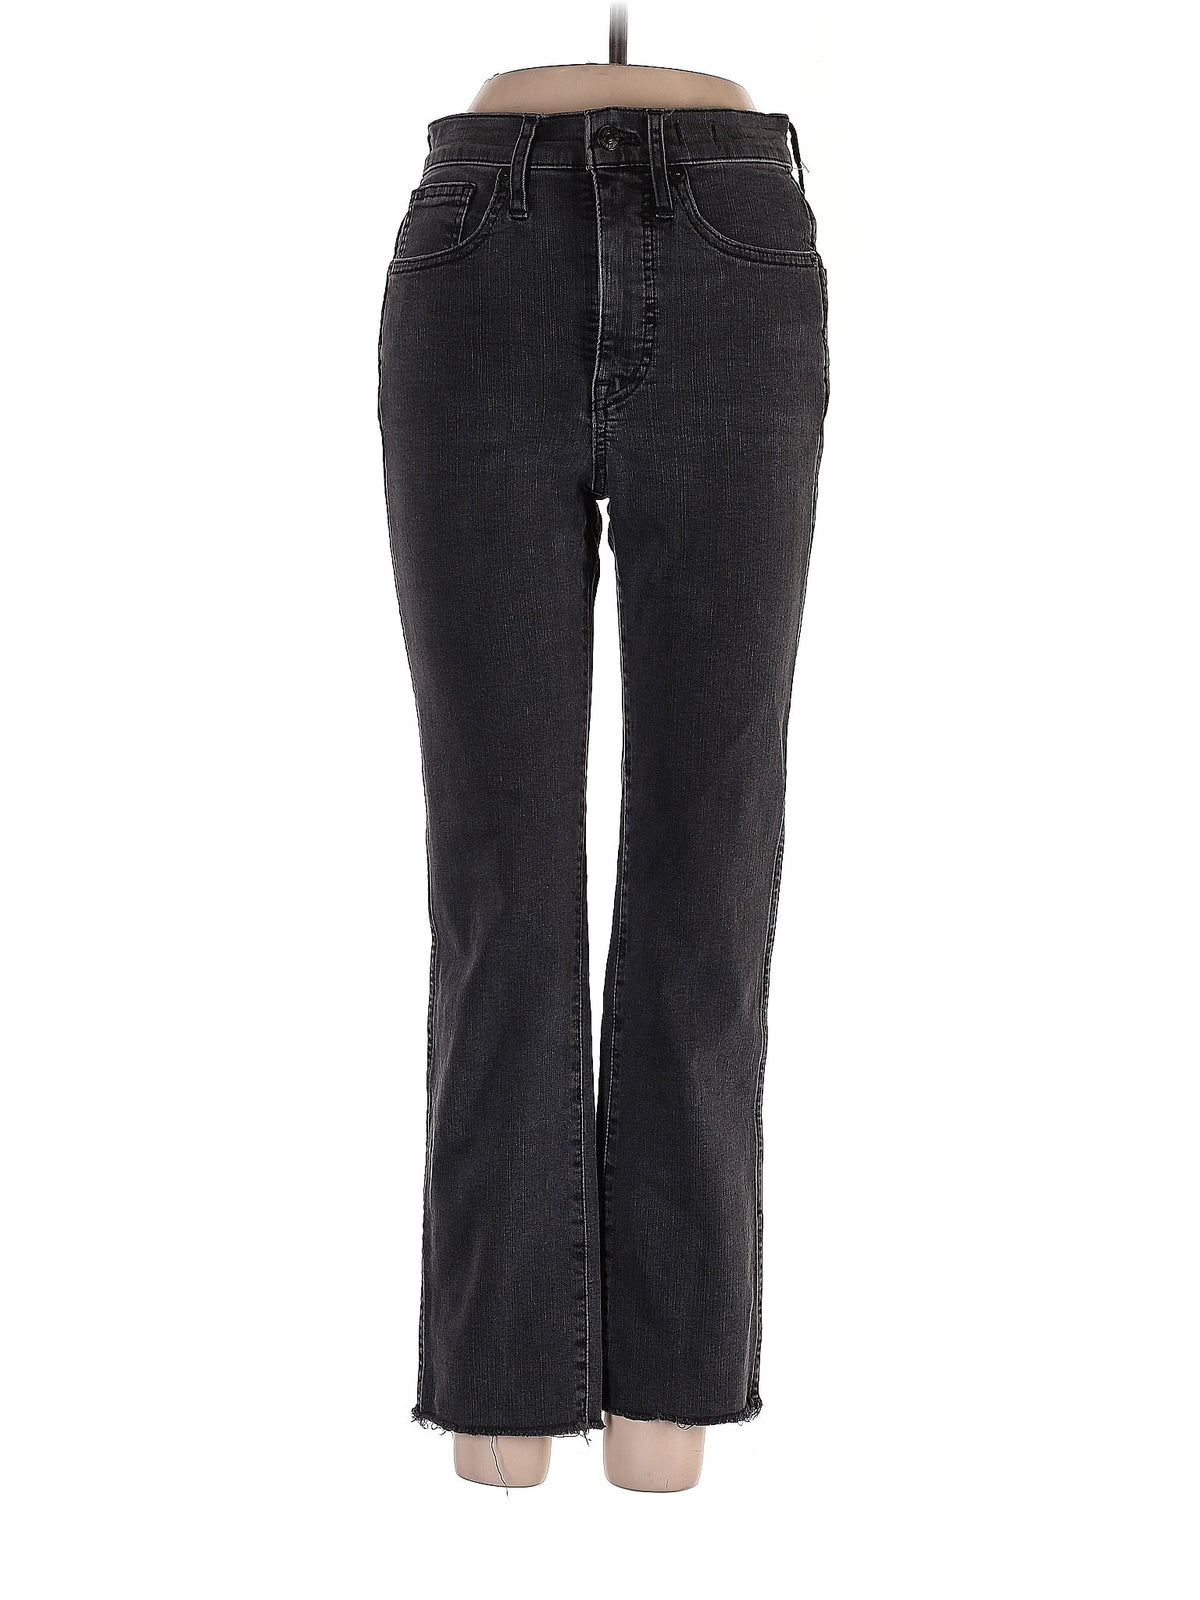 Mid-Rise Bootleg Jeans in Dark Wash waist size - 24